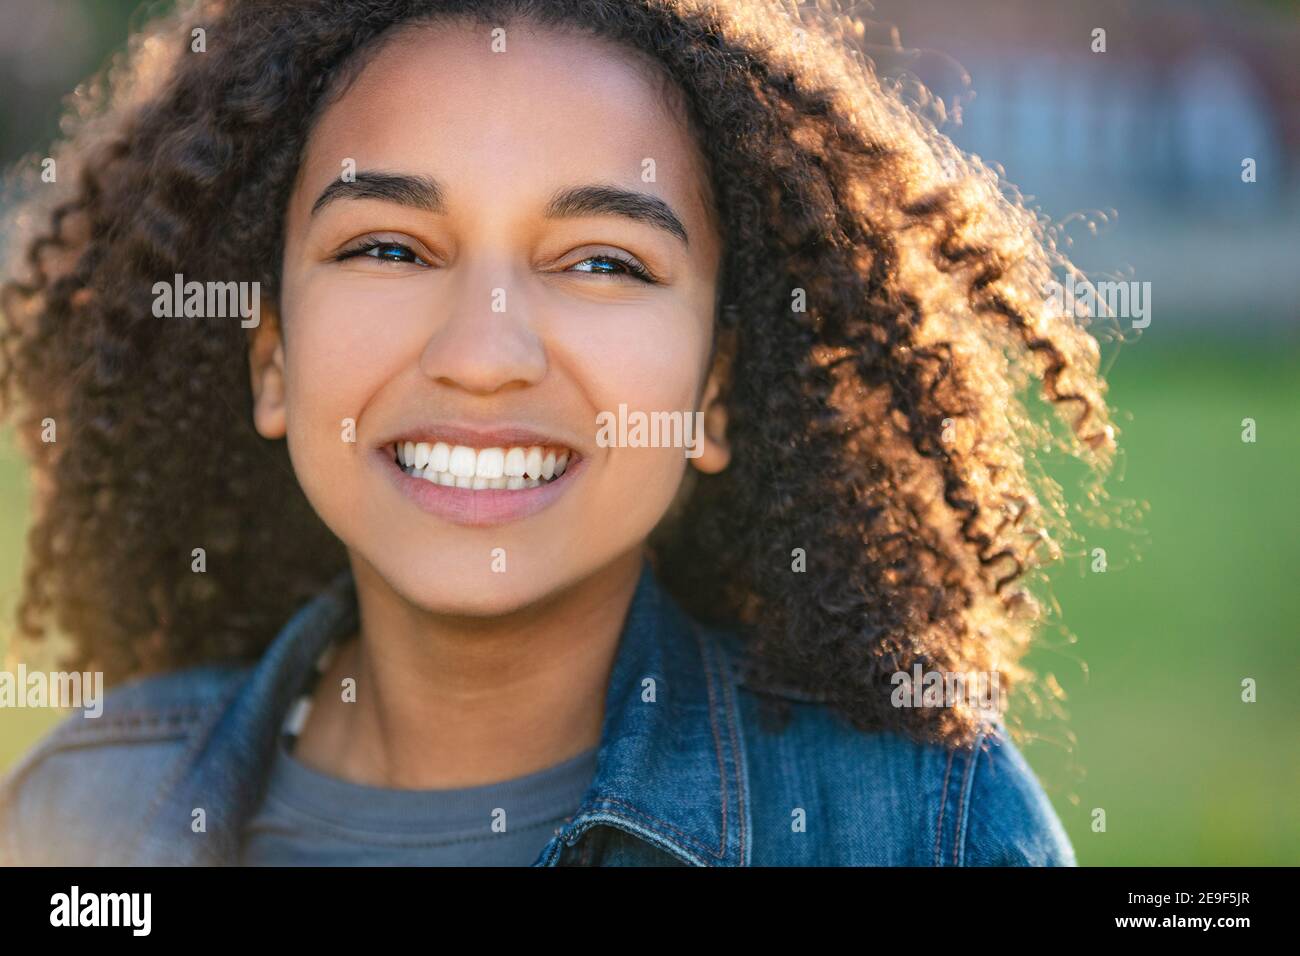 Outdoor ritratto della bella felice razza mista americano africano ragazza adolescente femmine giovane donna sorridente con denti perfetti Foto Stock